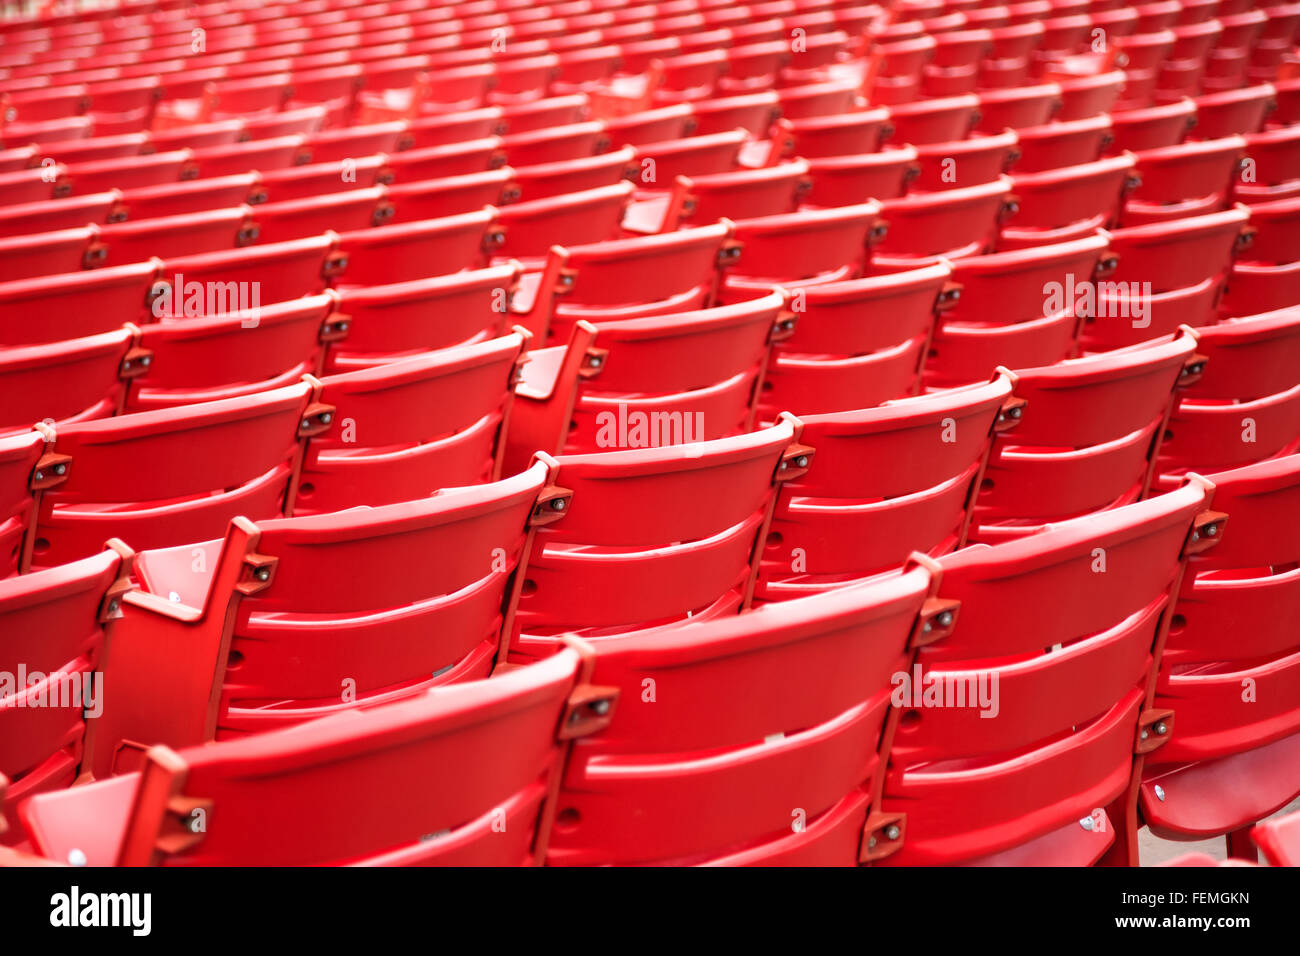 Rote Sitze in einer Reihe an einem Veranstaltungsort für Konzerte Stockfoto